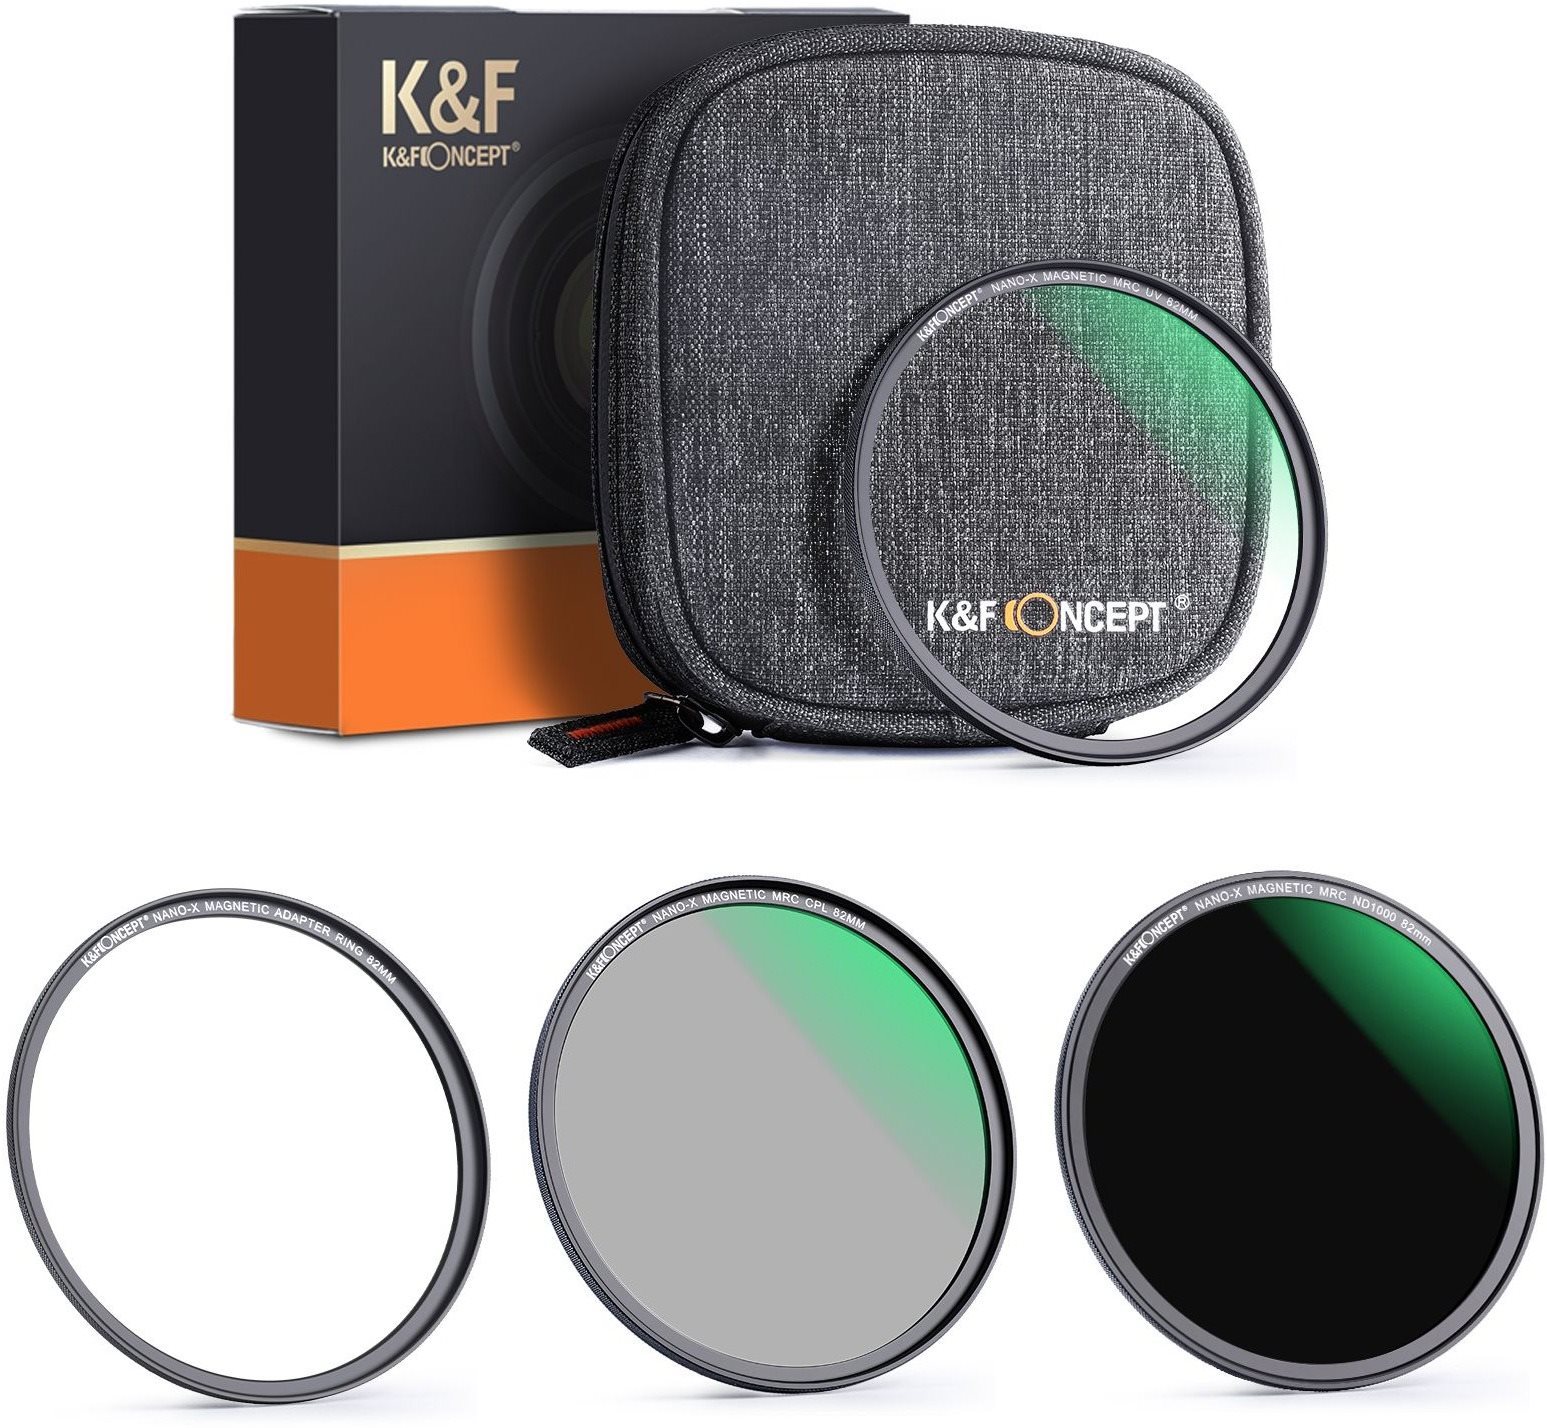 K&F Concept mágneses szűrőkészlet 3 db (MCUV, CPL, ND1000) - 58 mm